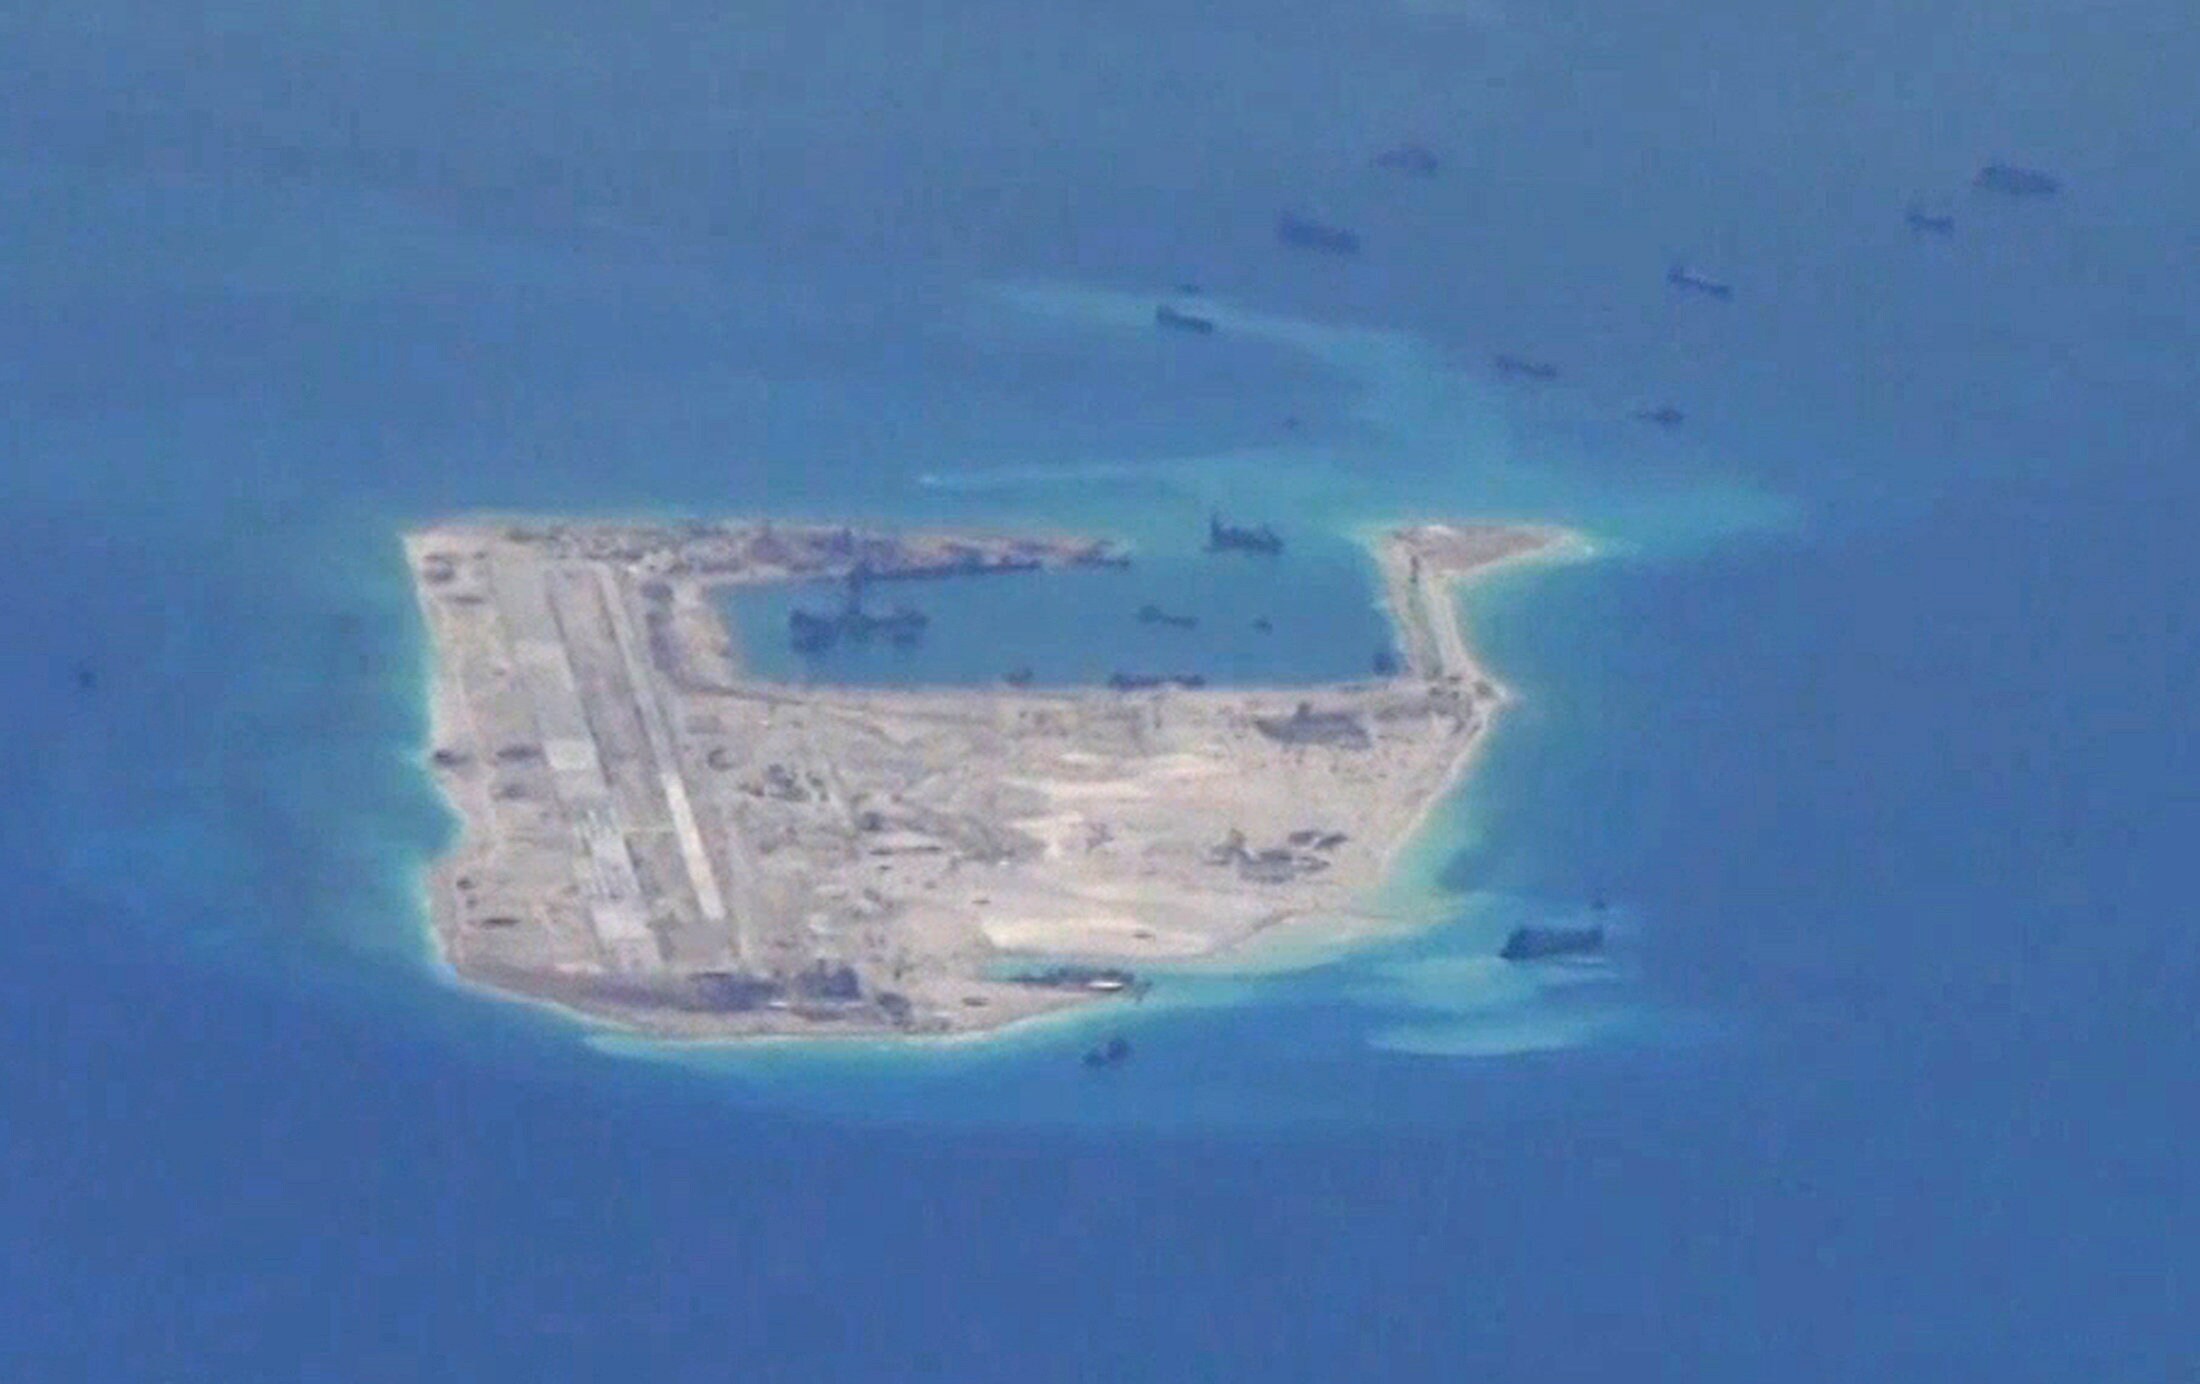 China laat voor het eerst bommenwerpers landen op omstreden eilanden